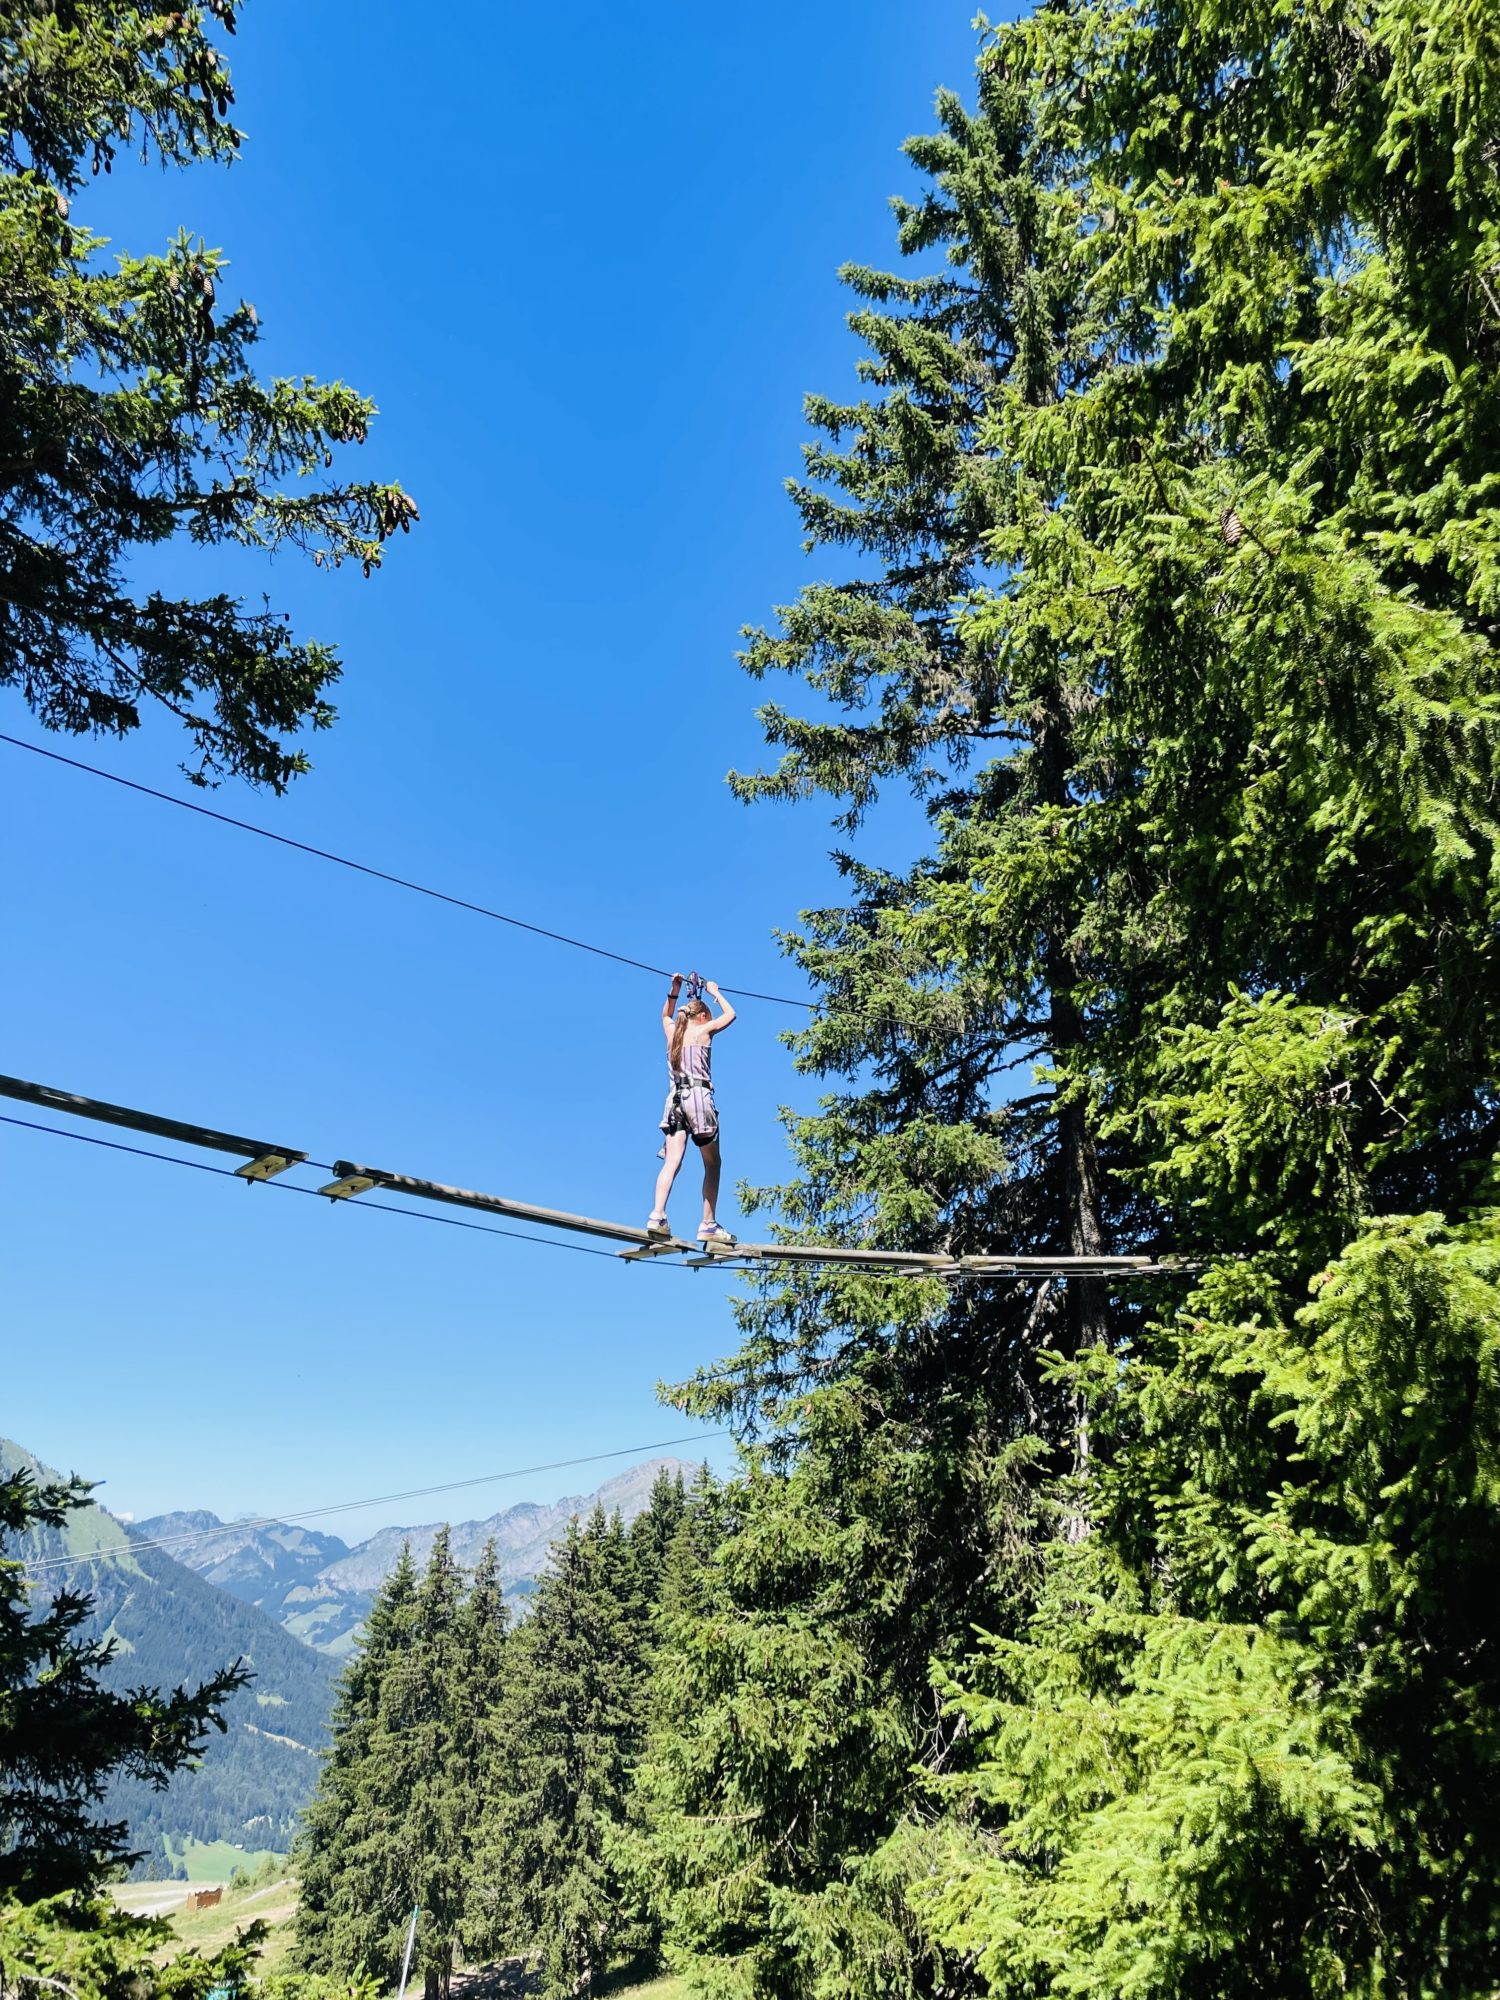 L'accrobranche en montagne, c'est impressionnant - Super Châtel - Vacances en Haute Savoie